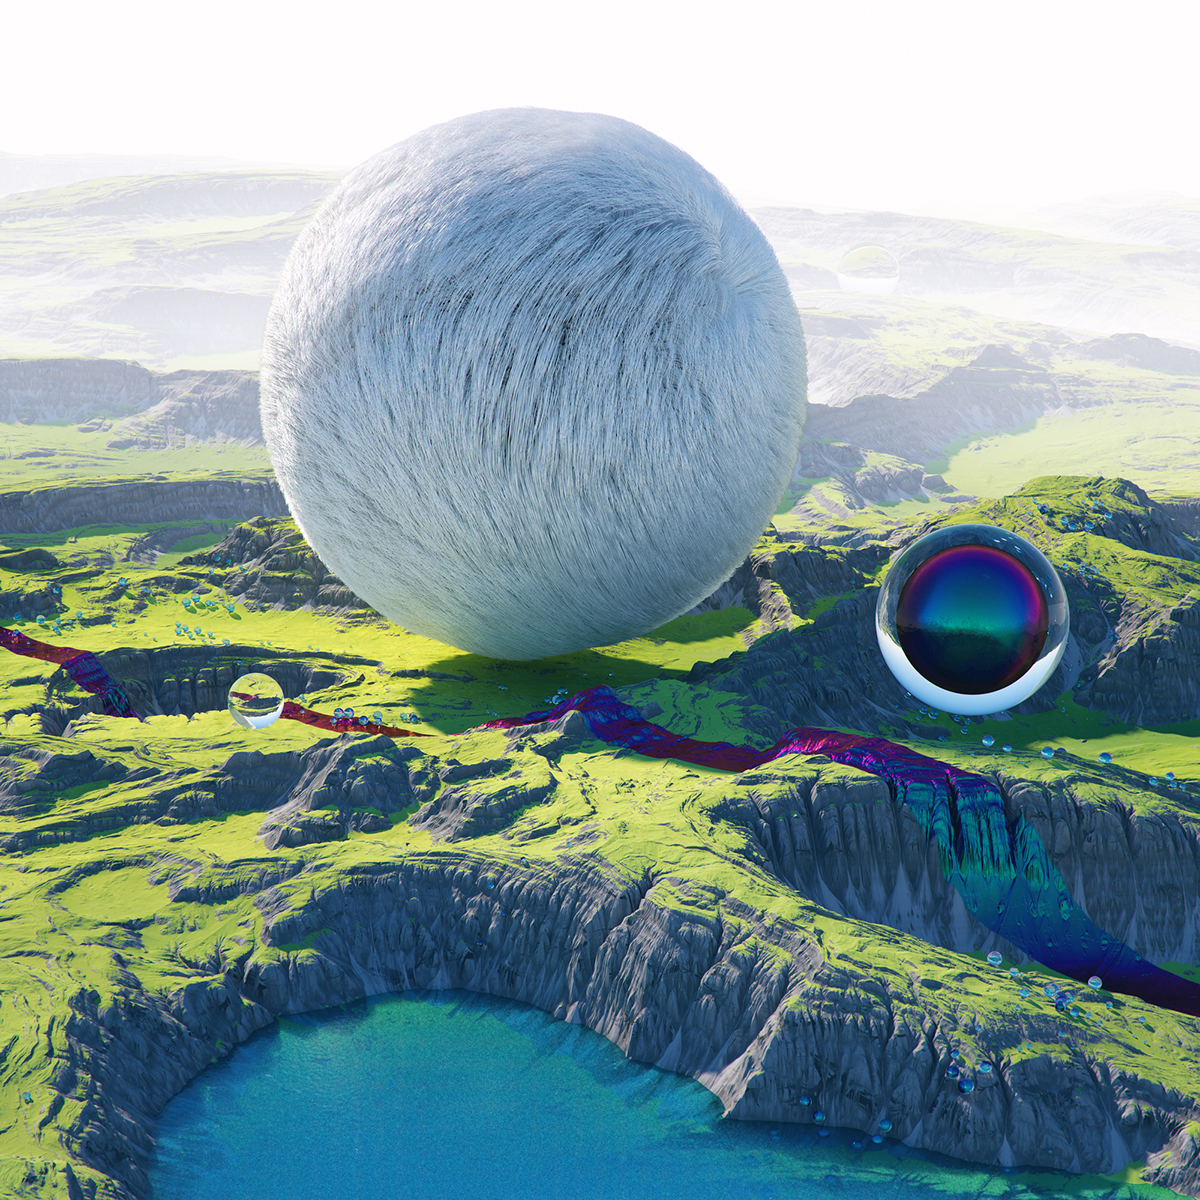 cinema 4d octane Render 3D Landscape surreal Scifi abstract